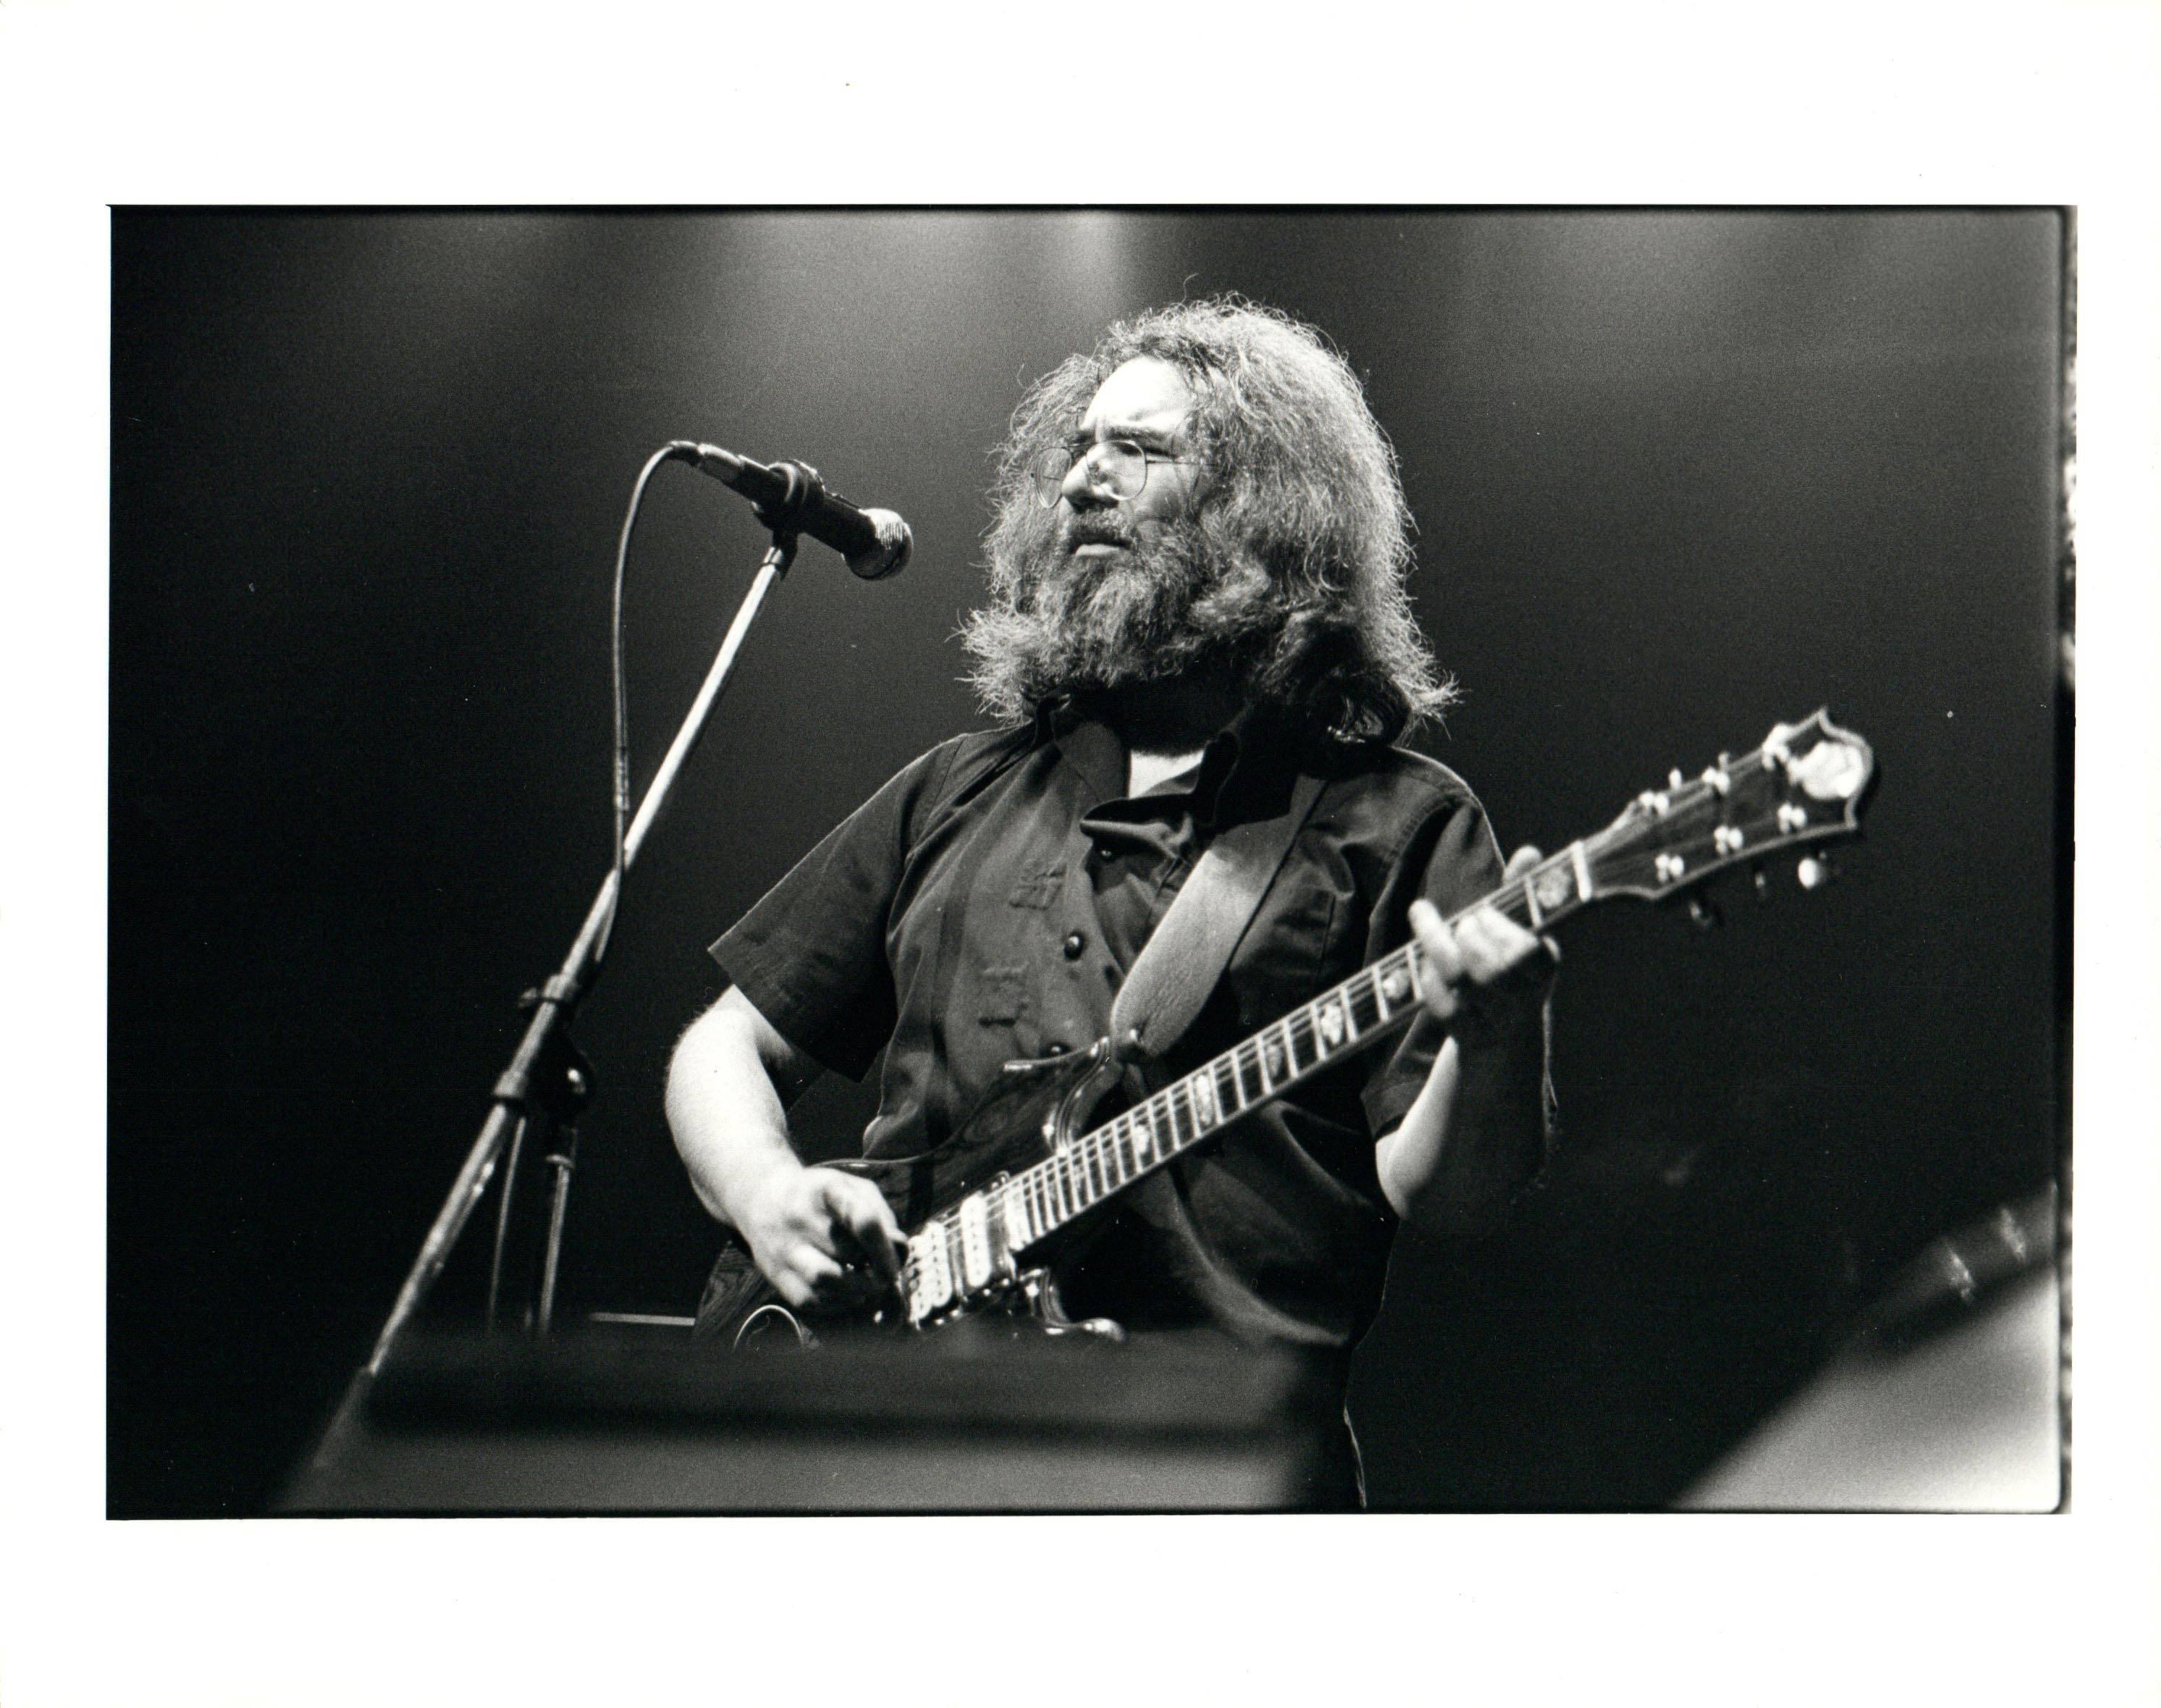 Michael Putland Portrait Photograph – Jerry Garcia Performing With The Grateful Dead Vintage Original Photograph